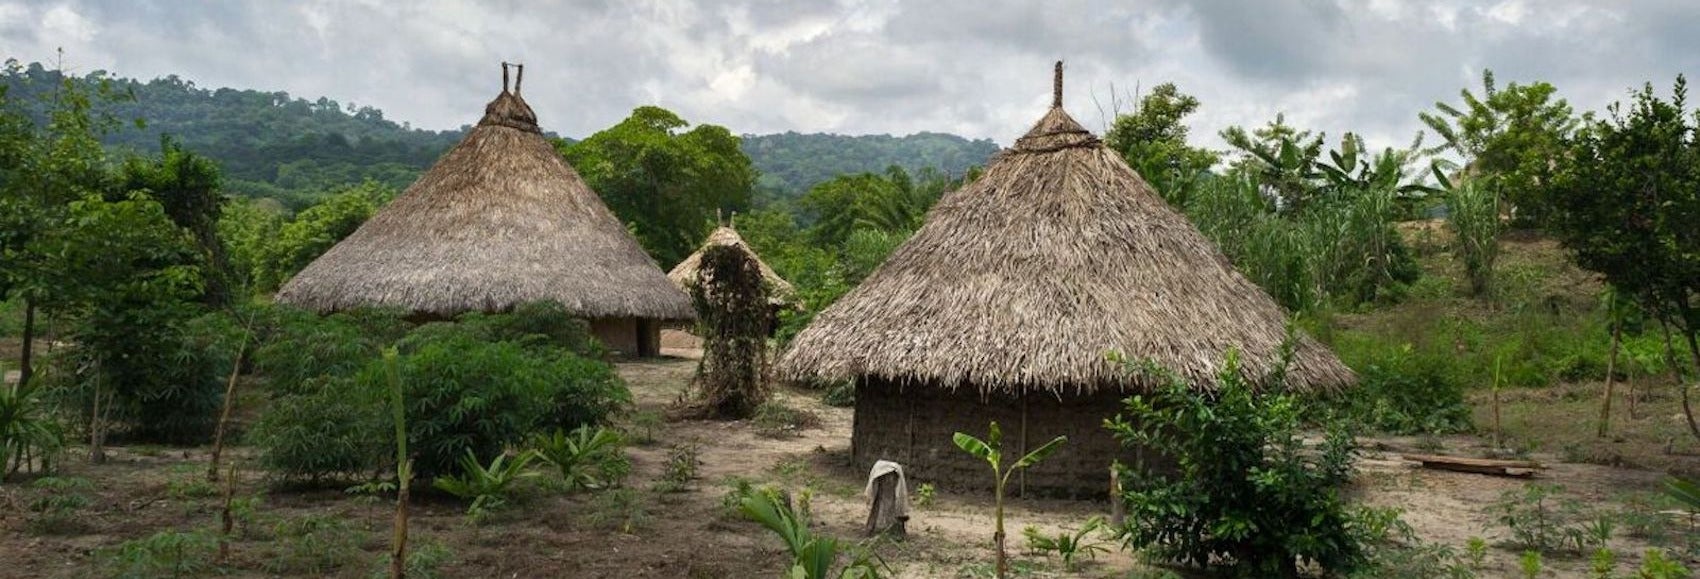 Excursão a uma comunidade indígena Kogui